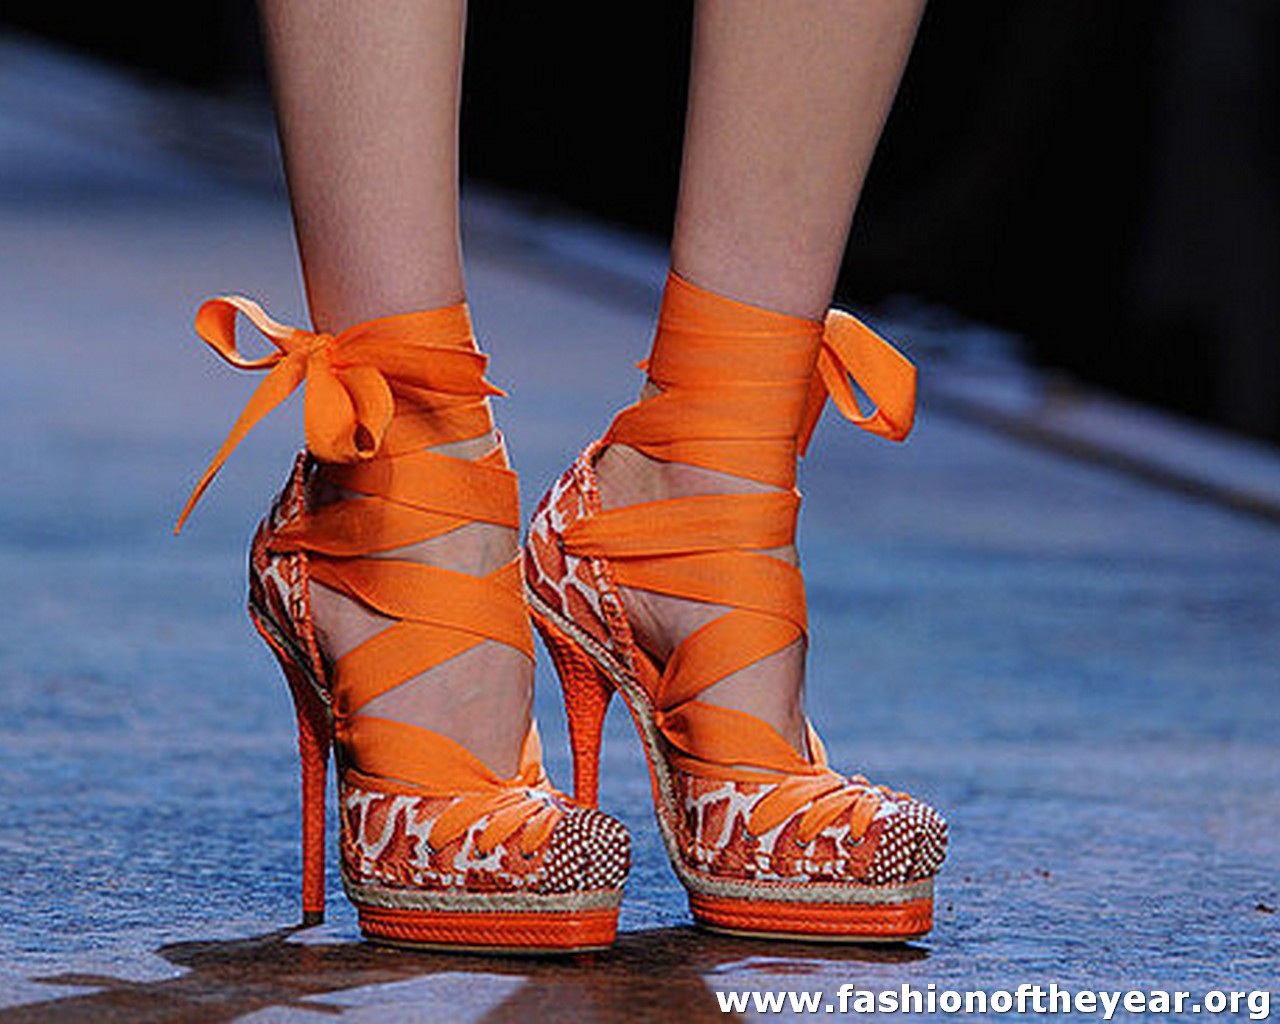 http://2.bp.blogspot.com/-X9oI-rf_fXg/TtpBOIGNQII/AAAAAAAAANs/M01sD6qHggs/s1600/Perple-Shoe-Trends-2012.jpg